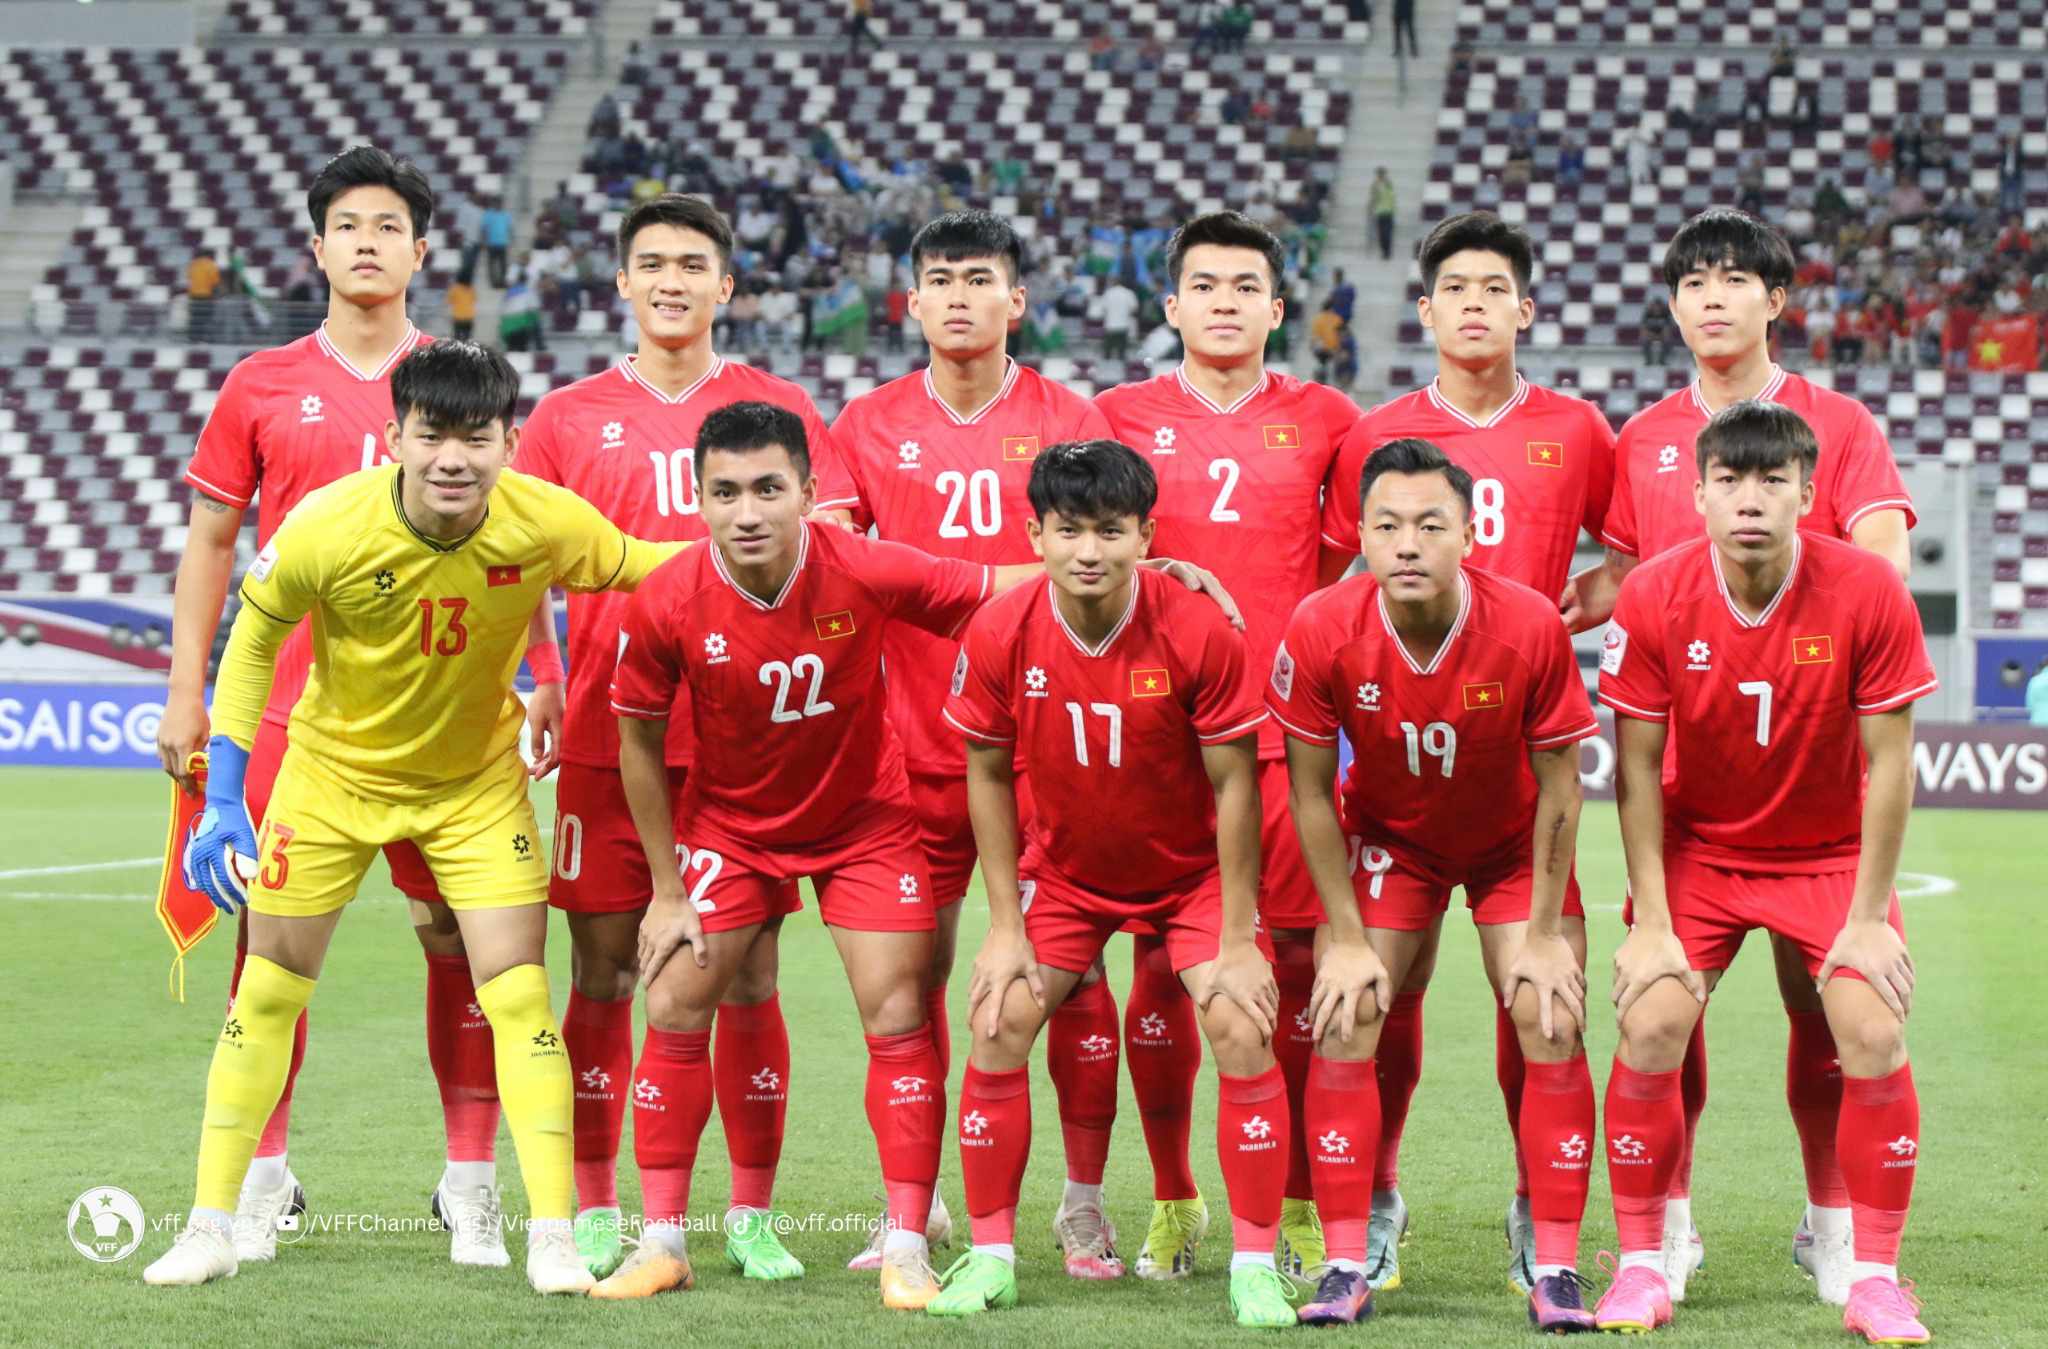 HLV Hoàng Anh Tuấn tin tưởng đội tuyển U.23 Việt Nam sẽ đá tốt hơn trước đội U.23 Iraq